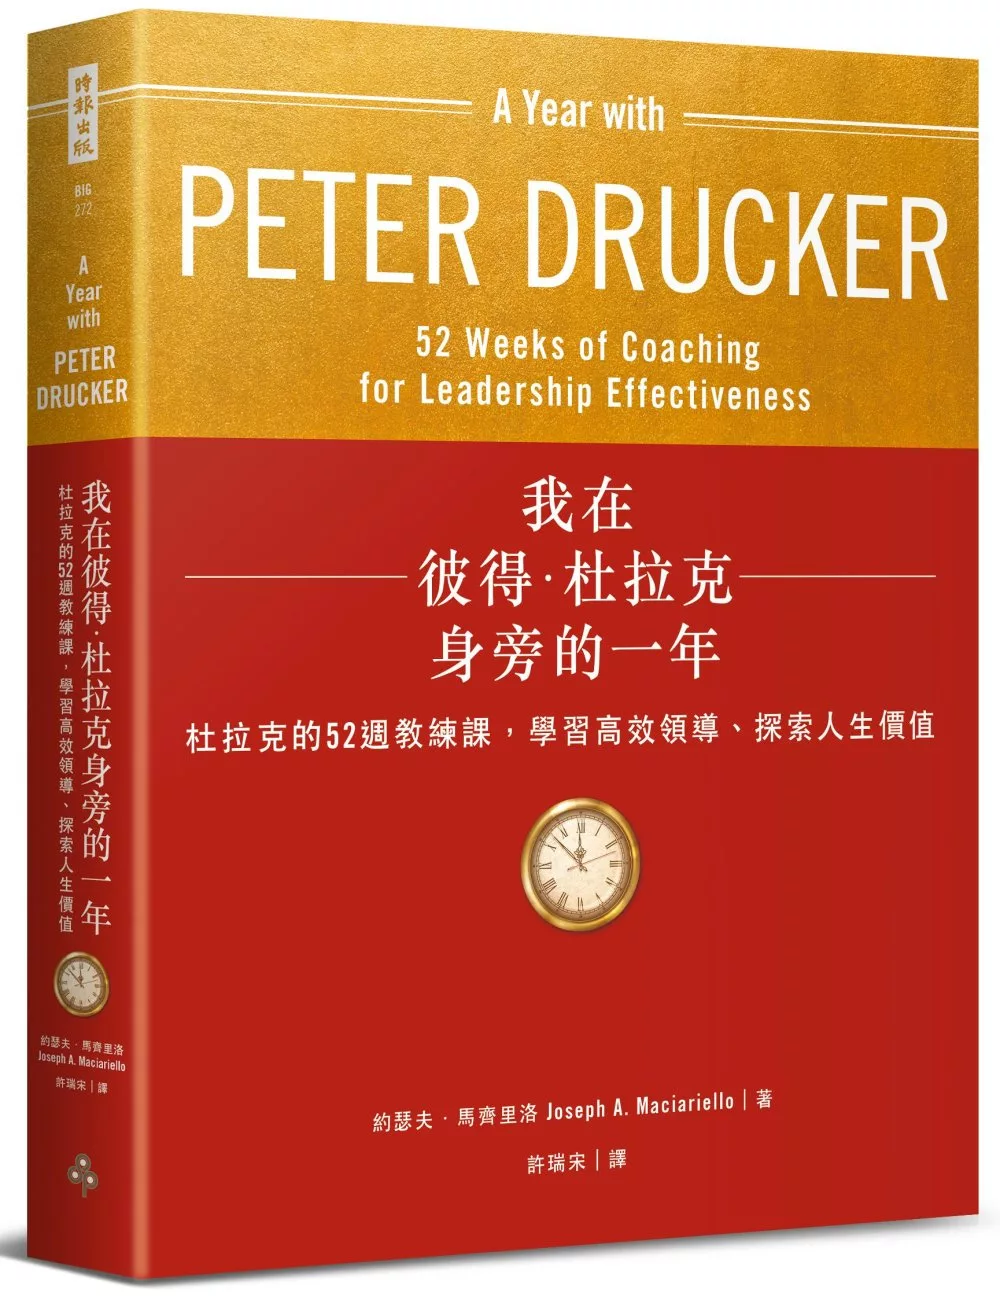 我在彼得．杜拉克身旁的一年：杜拉克的52週教練課，學習高效領導、探索人生價值〔附｜杜拉克187個關鍵管理原則一覽表〕